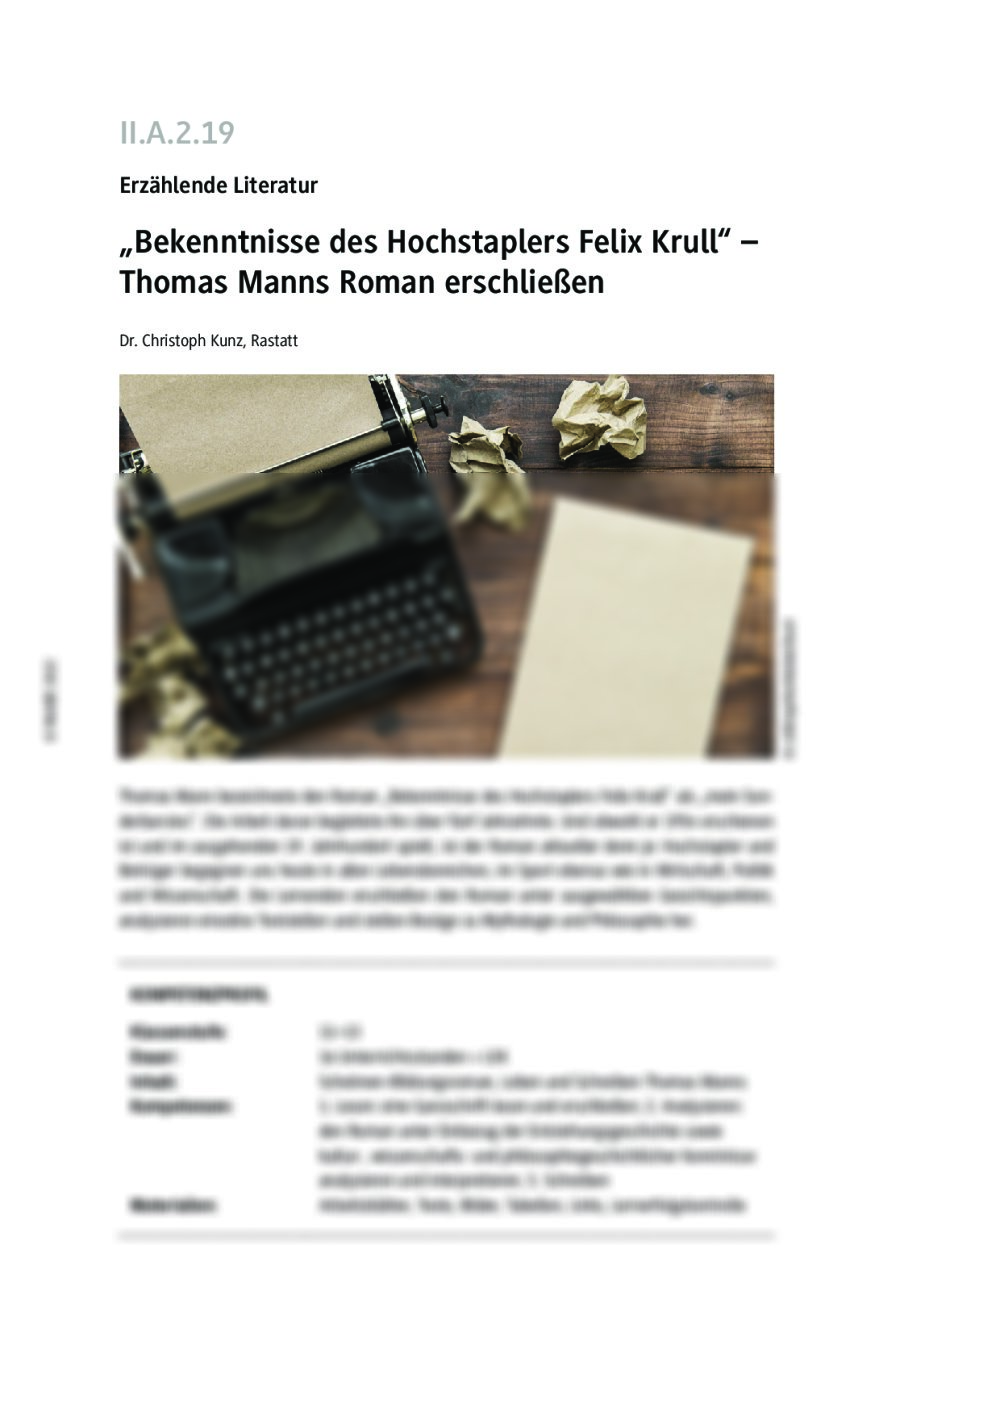 "Bekenntnisse des Hochstaplers Felix Krull" - Seite 1